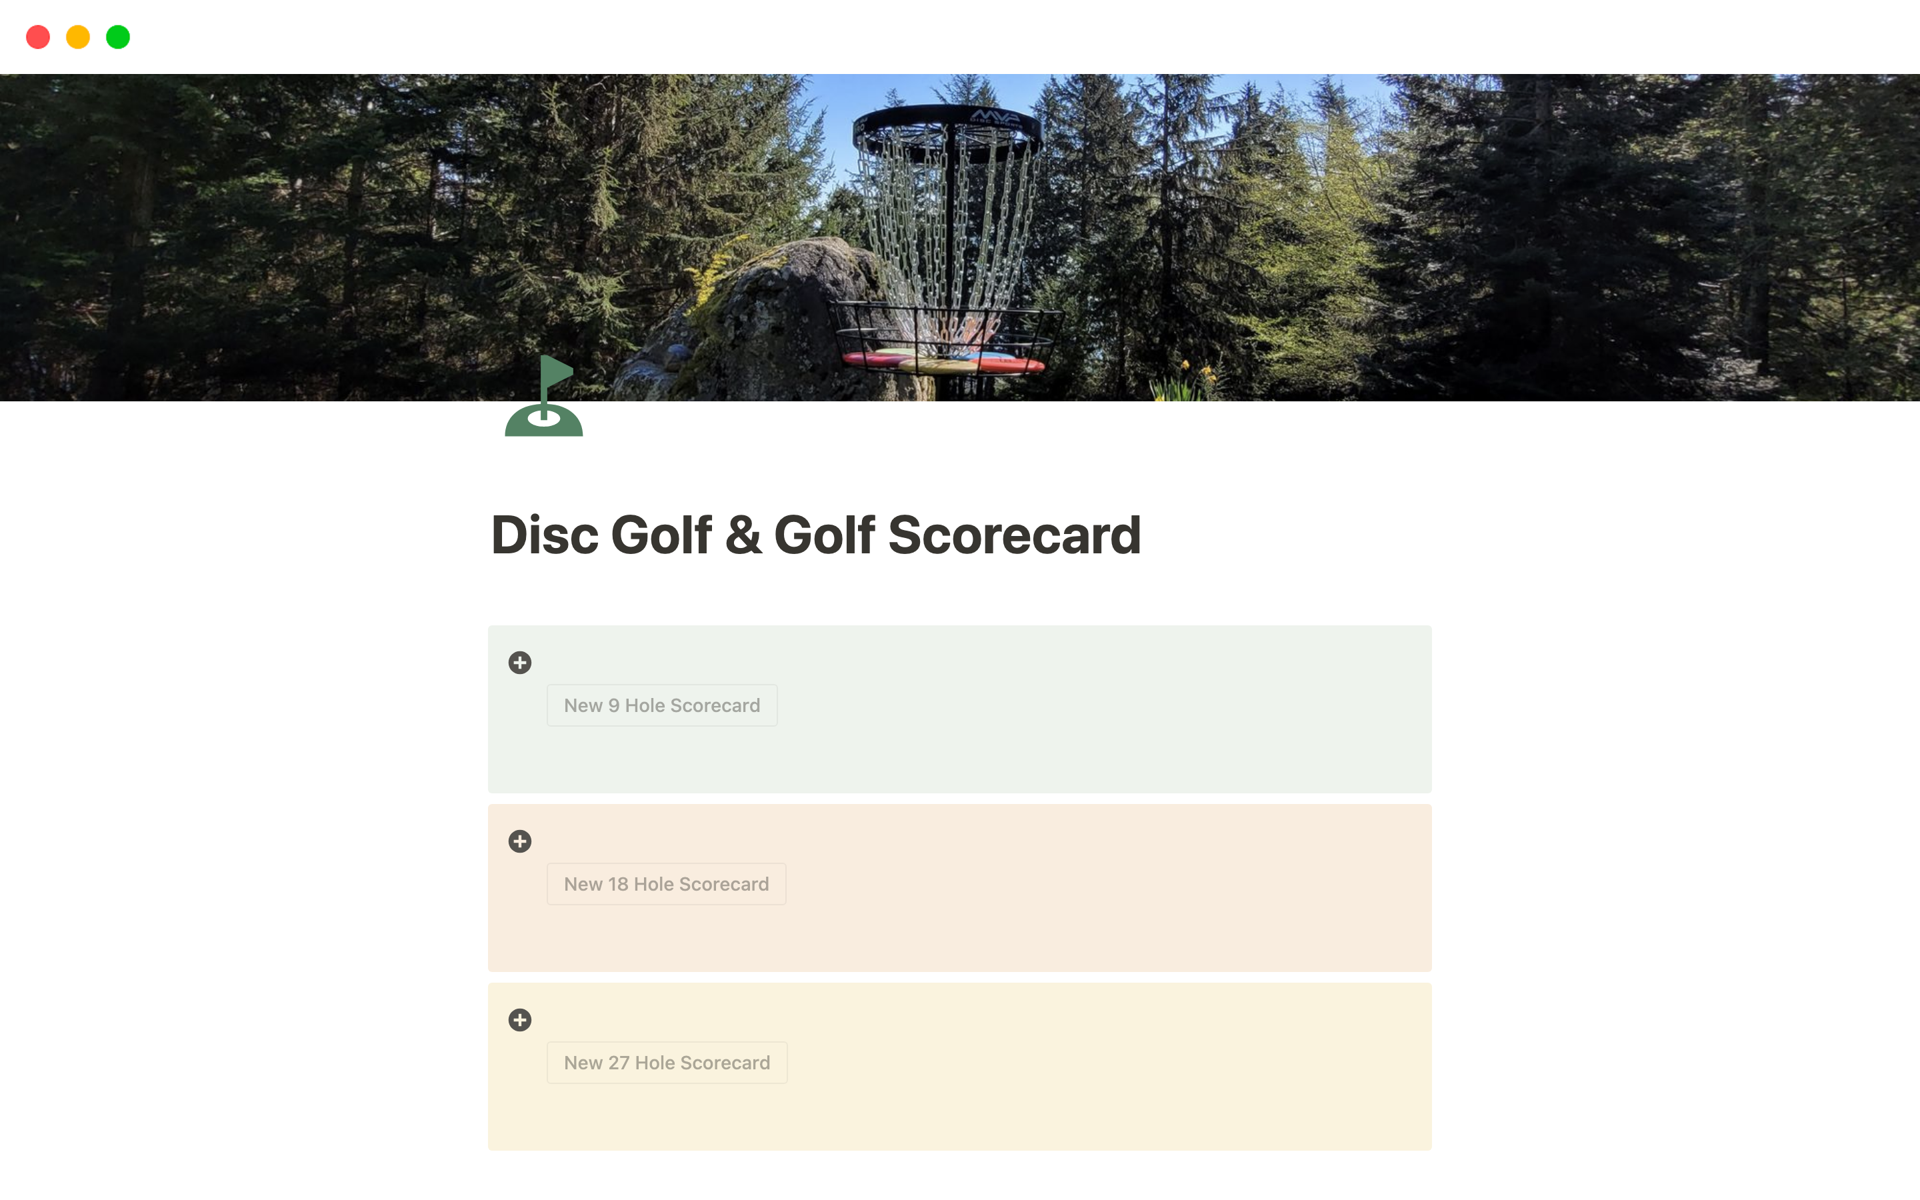 Vista previa de plantilla para Disc Golf & Golf Scorecard For Solo Play